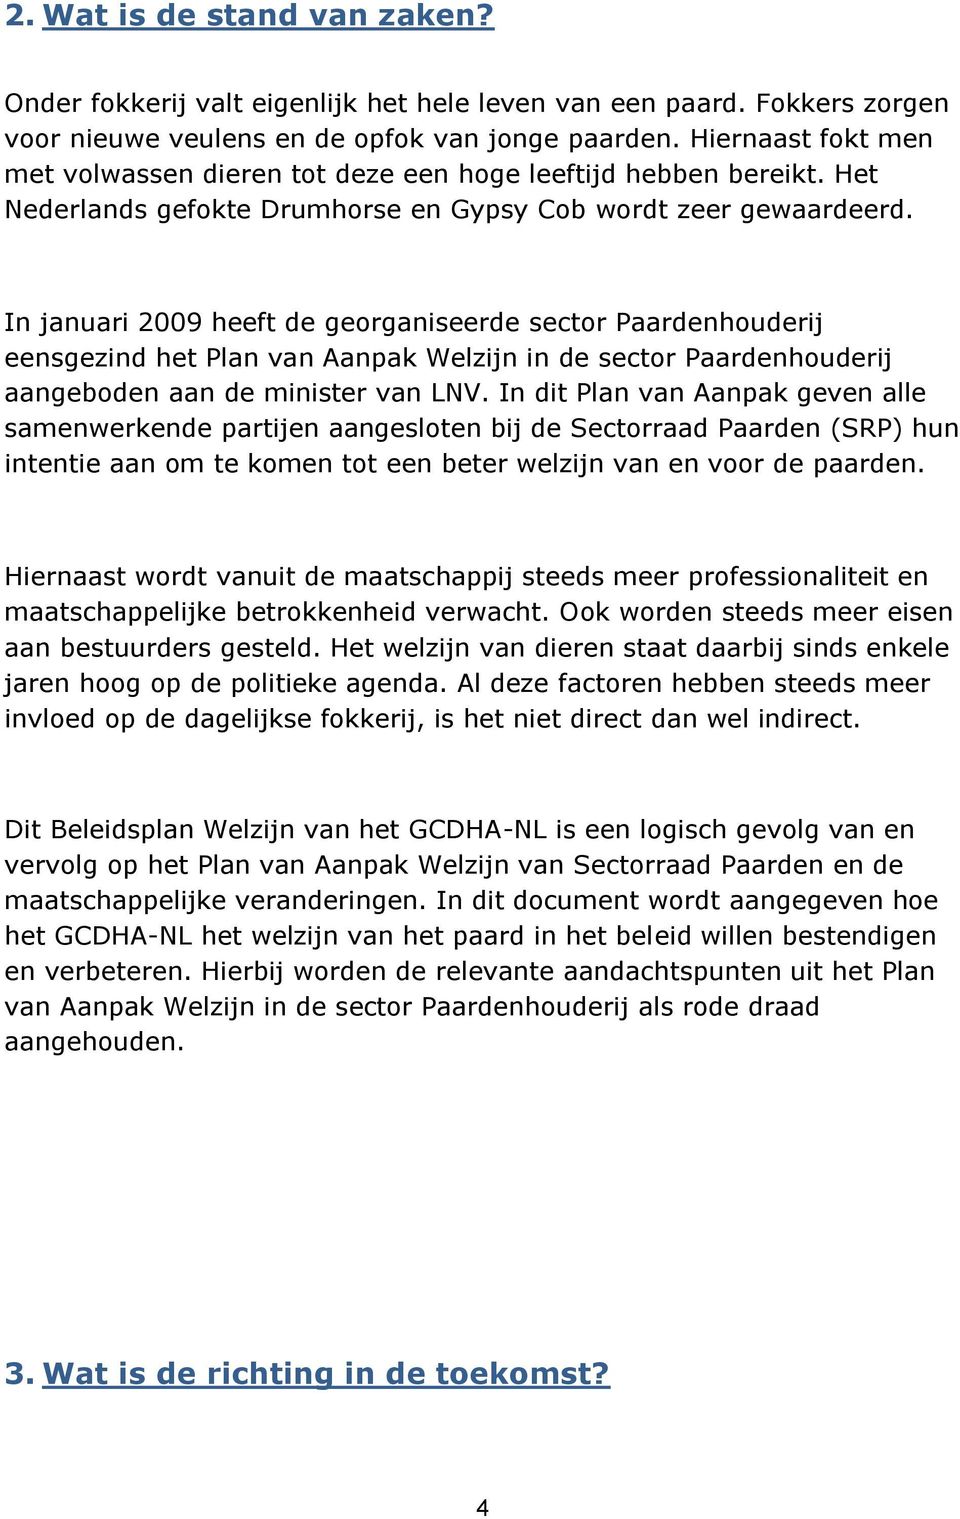 In januari 2009 heeft de georganiseerde sector Paardenhouderij eensgezind het Plan van Aanpak Welzijn in de sector Paardenhouderij aangeboden aan de minister van LNV.